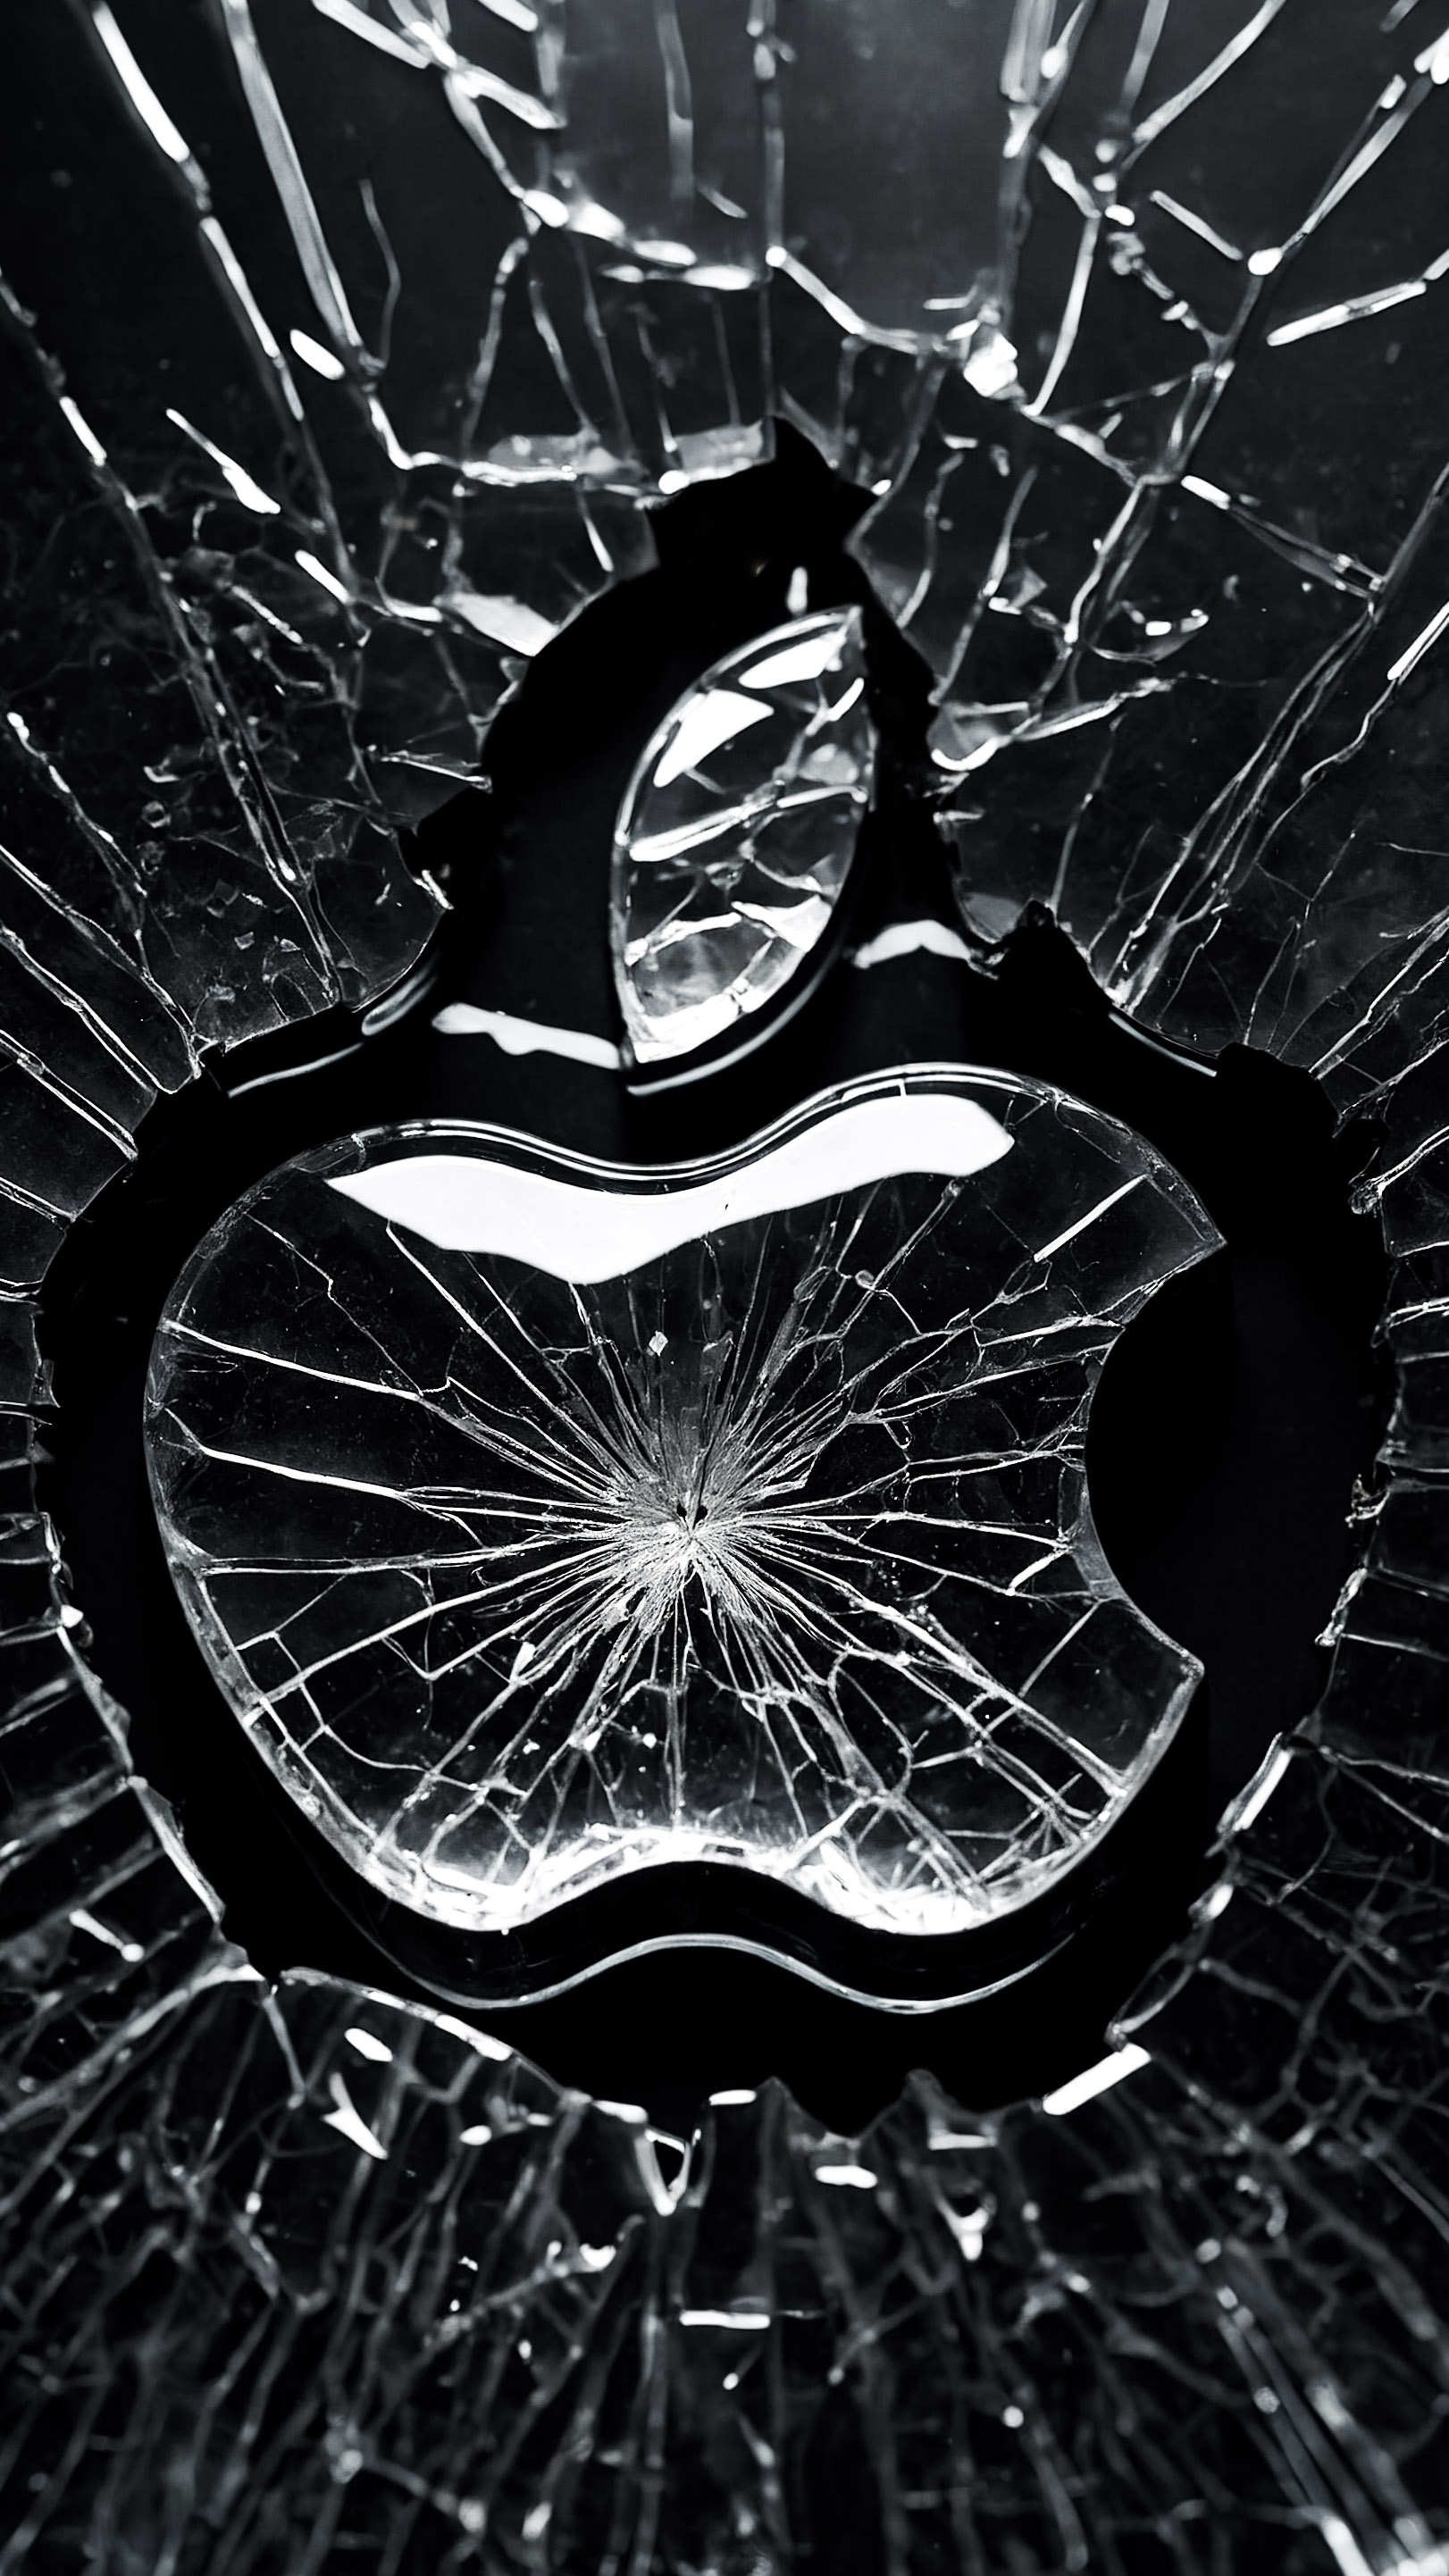 Transformez l'apparence de votre appareil avec un logo Apple sur un fond noir, présentant une surface de verre brisée, avec des fissures rayonnant à partir d'un point central sous la forme du logo Apple emblématique. 